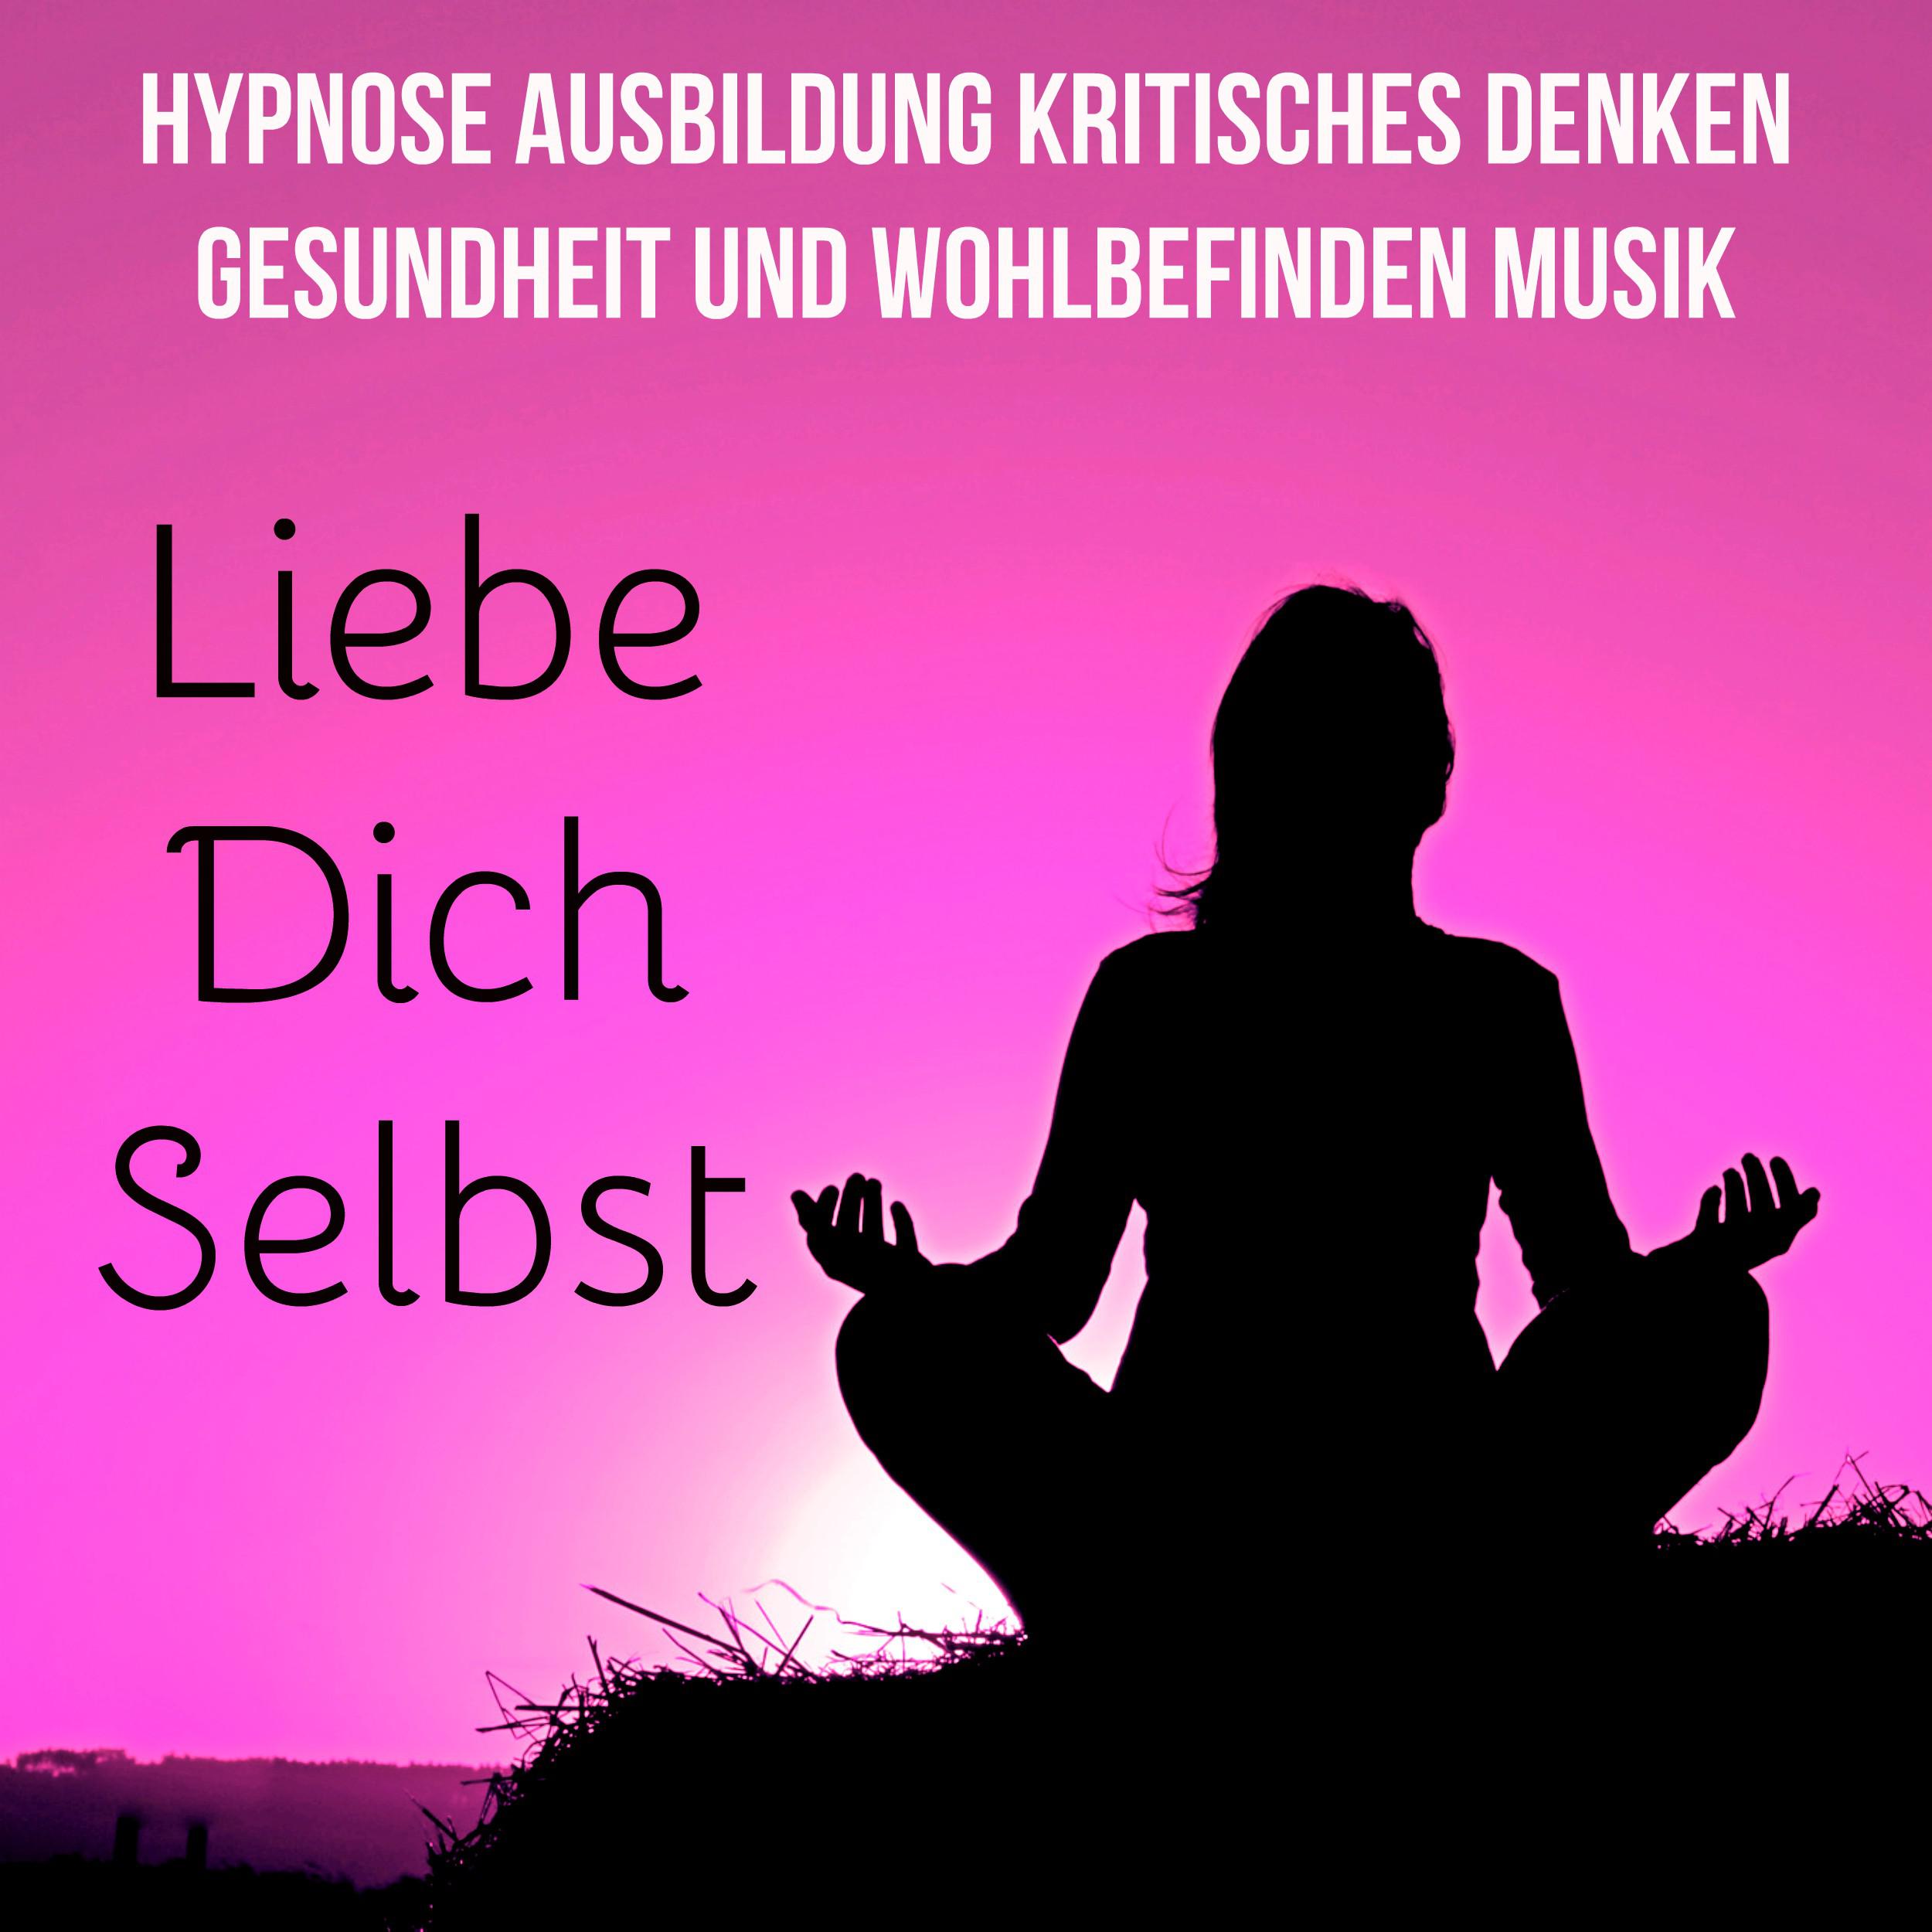 Liebe Dich Selbst  Hypnose Ausbildung Kritisches Denken Gesundheit und Wohlbefinden Musik mit Natur New Age Ger usche